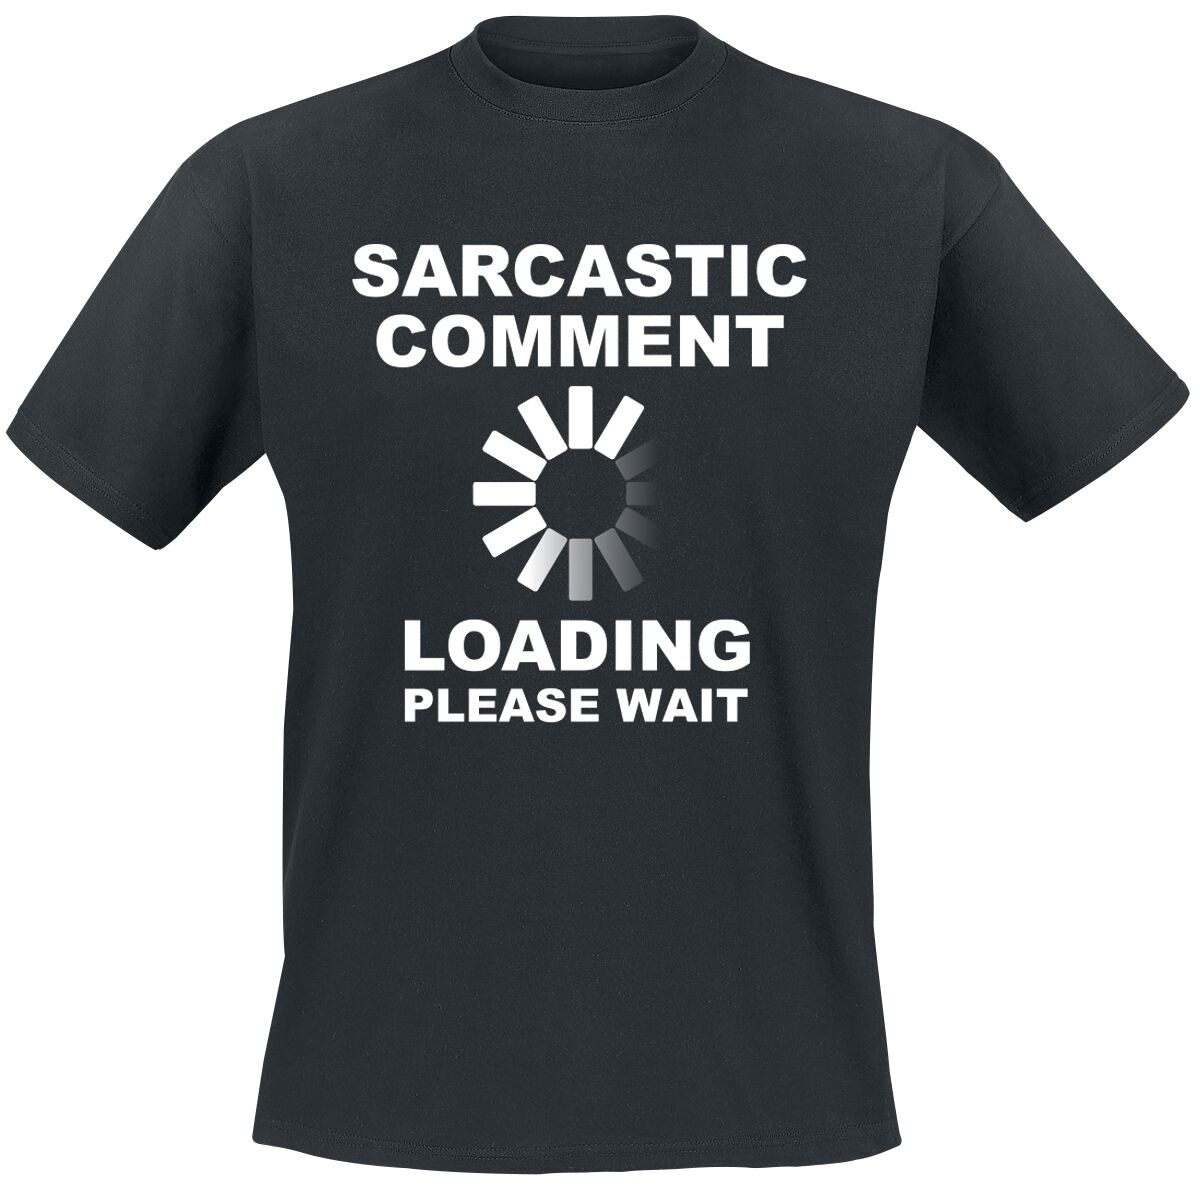 Sprüche T-Shirt - Sarcastic Comment - S bis 5XL - für Männer - Größe 3XL - schwarz